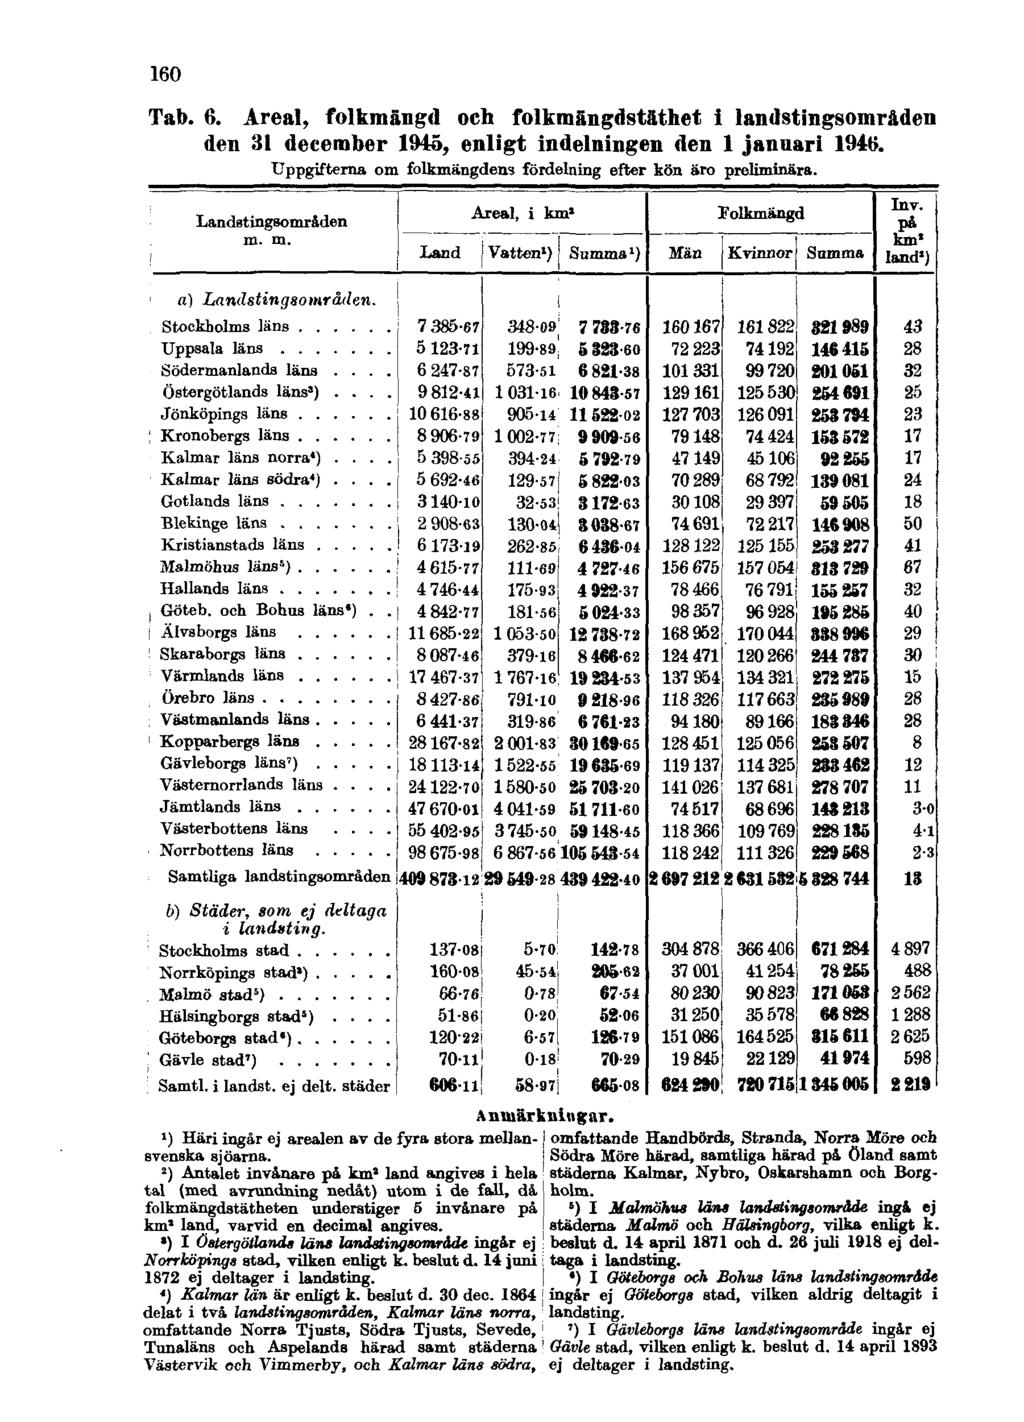 160 Tab. 6. Areal, folkmängd och folkmängdstäthet i landstingsområden den 31 december 1945, enligt indelningen den 1 januari 1946. Uppgifterna om folkmängdens fördelning efter kön äro preliminära.